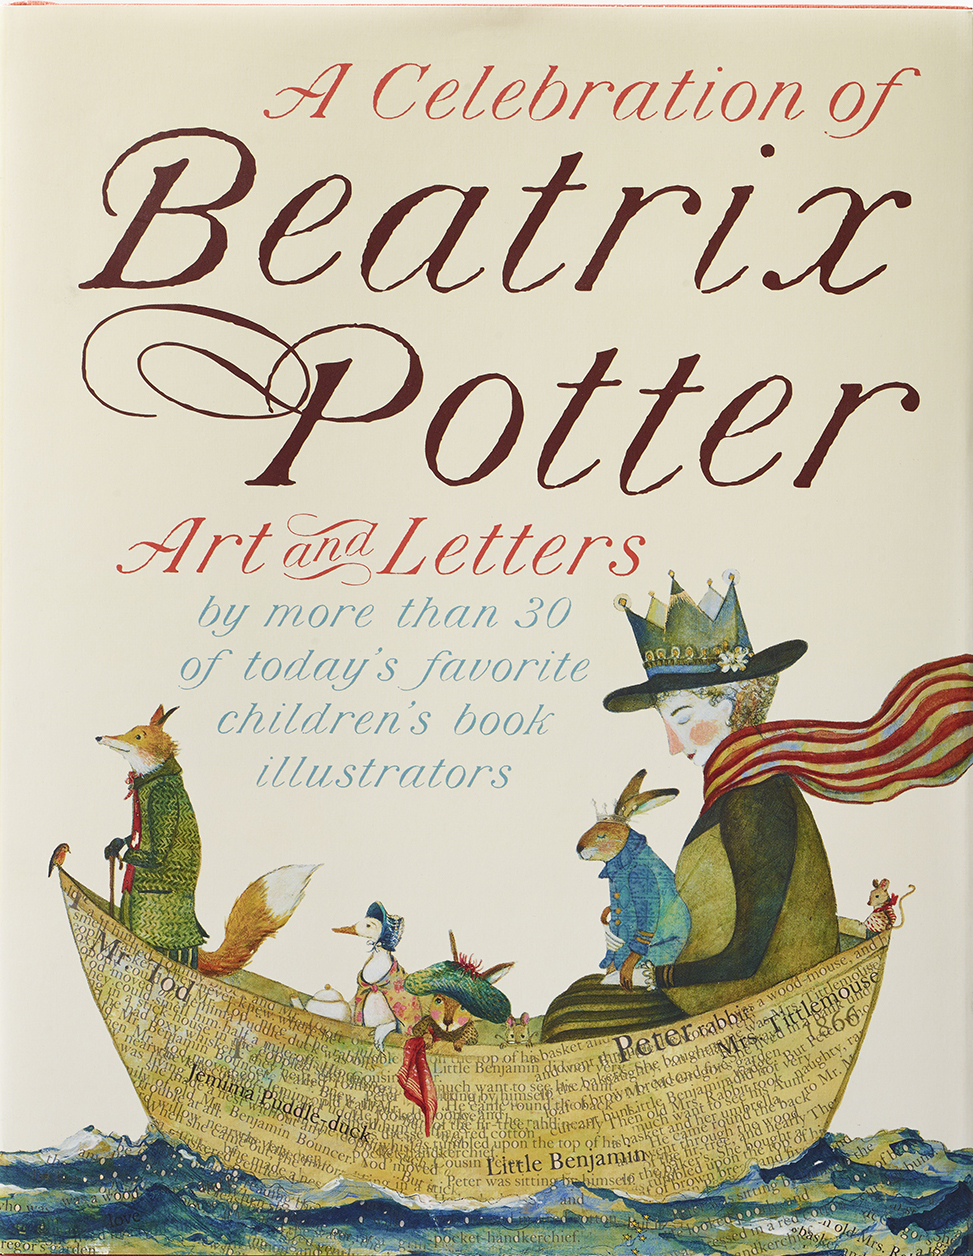 Beatrix Potter Cover.jpg